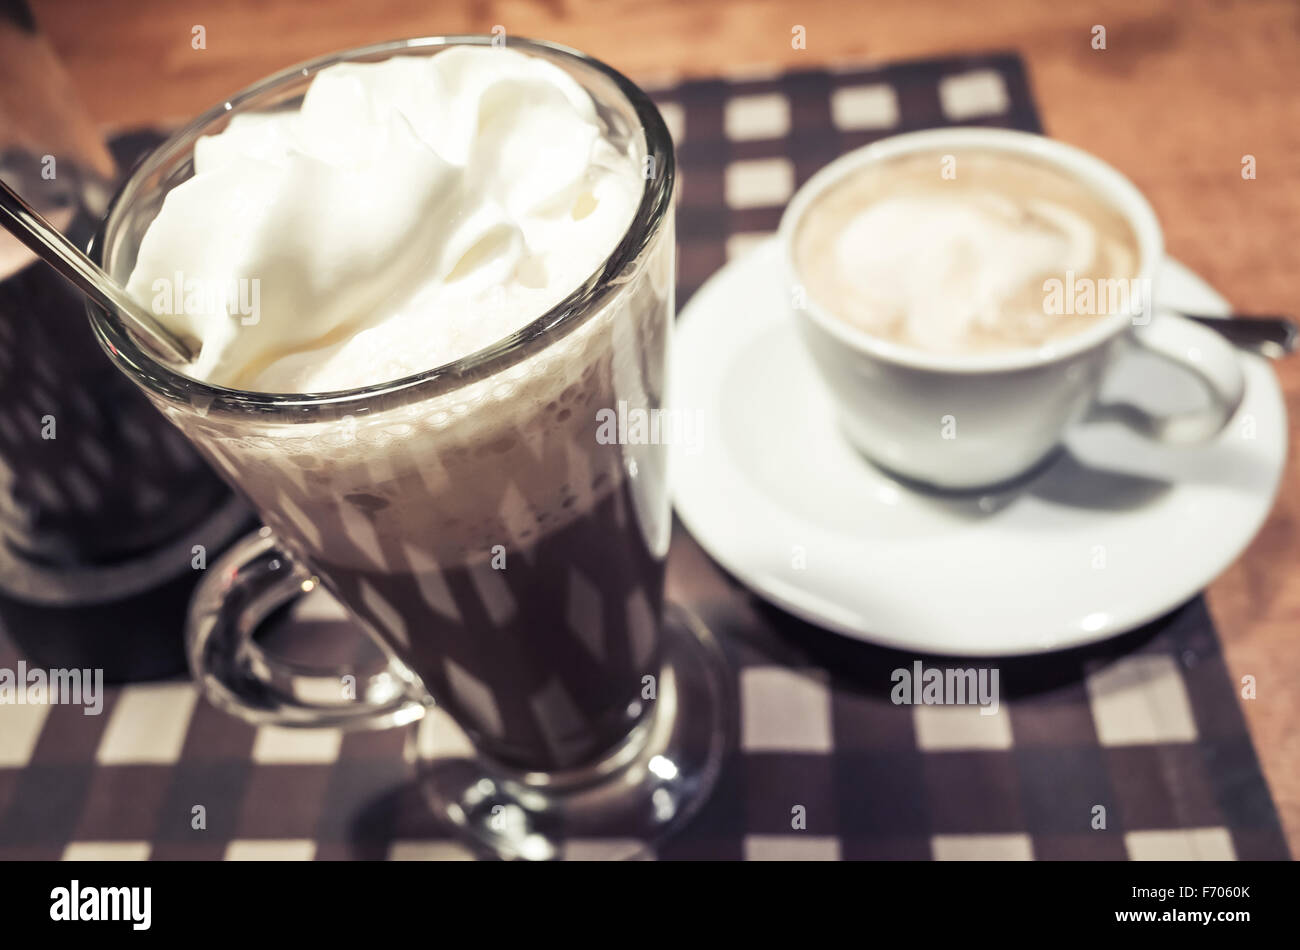 Vaso de chocolate caliente y la taza de café cappuccino de pie en una tabla Foto de stock